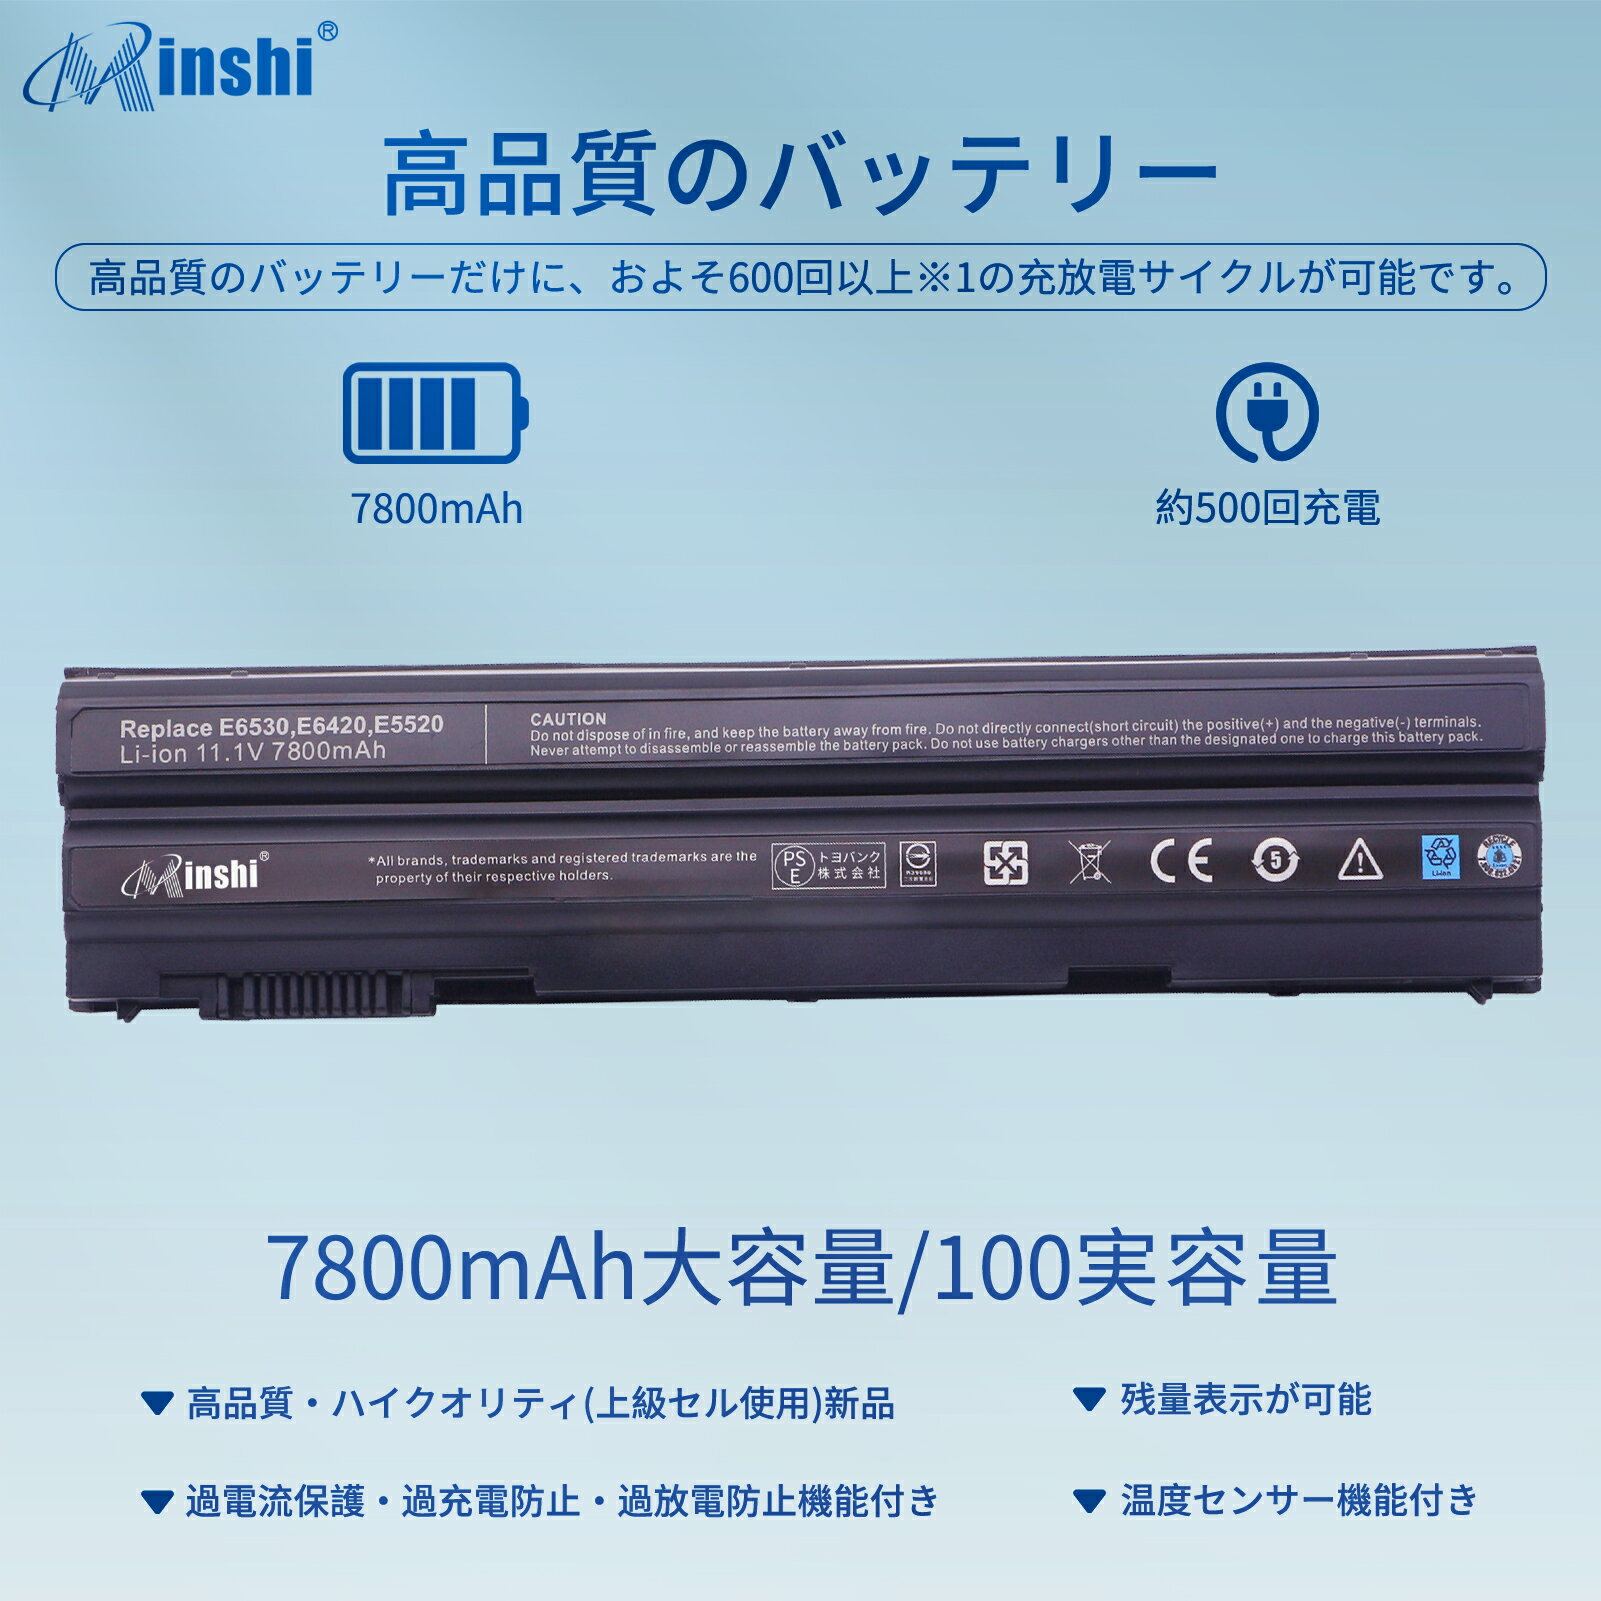 minshi 新品 Dell 0X57F1 互換バッテリー 対応 高品質交換用電池パック PSE認証 1年間保証 7800mAh 2